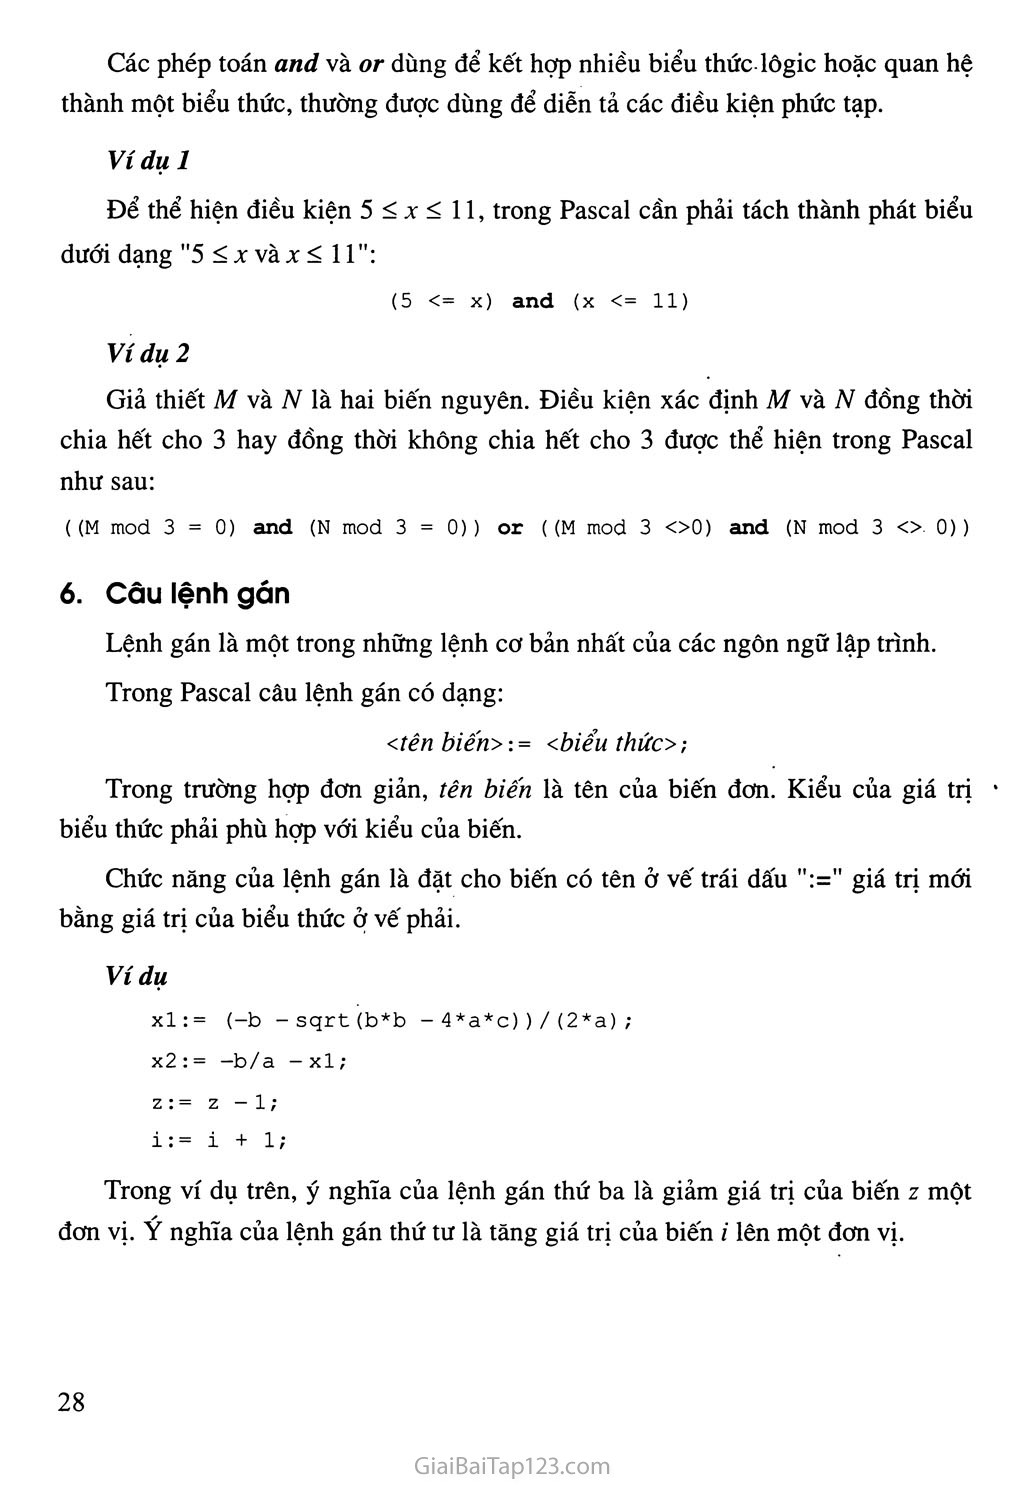 Bài 6. Phép toán, biểu thức, câu lệnh gán trang 5